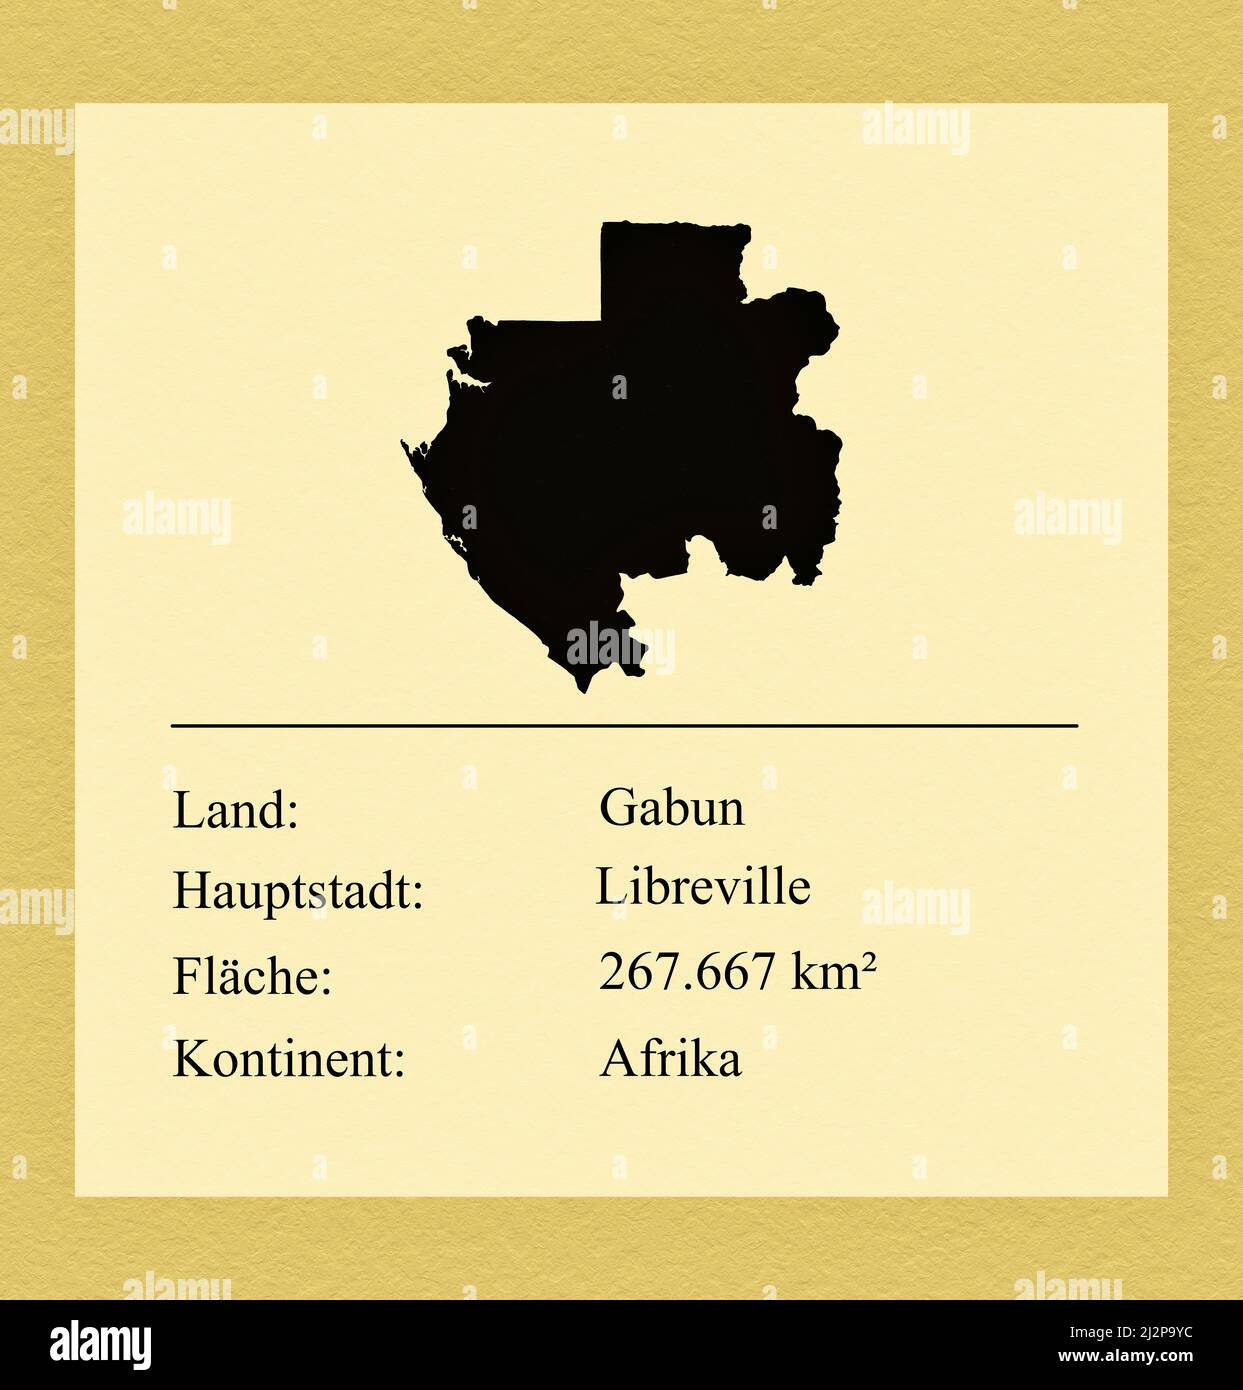 Umrisse des Landes Gabun, darunter ein kleiner Steckbrief mit Ländernamen, Hauptstadt, Fläche und Kontinent Foto de stock